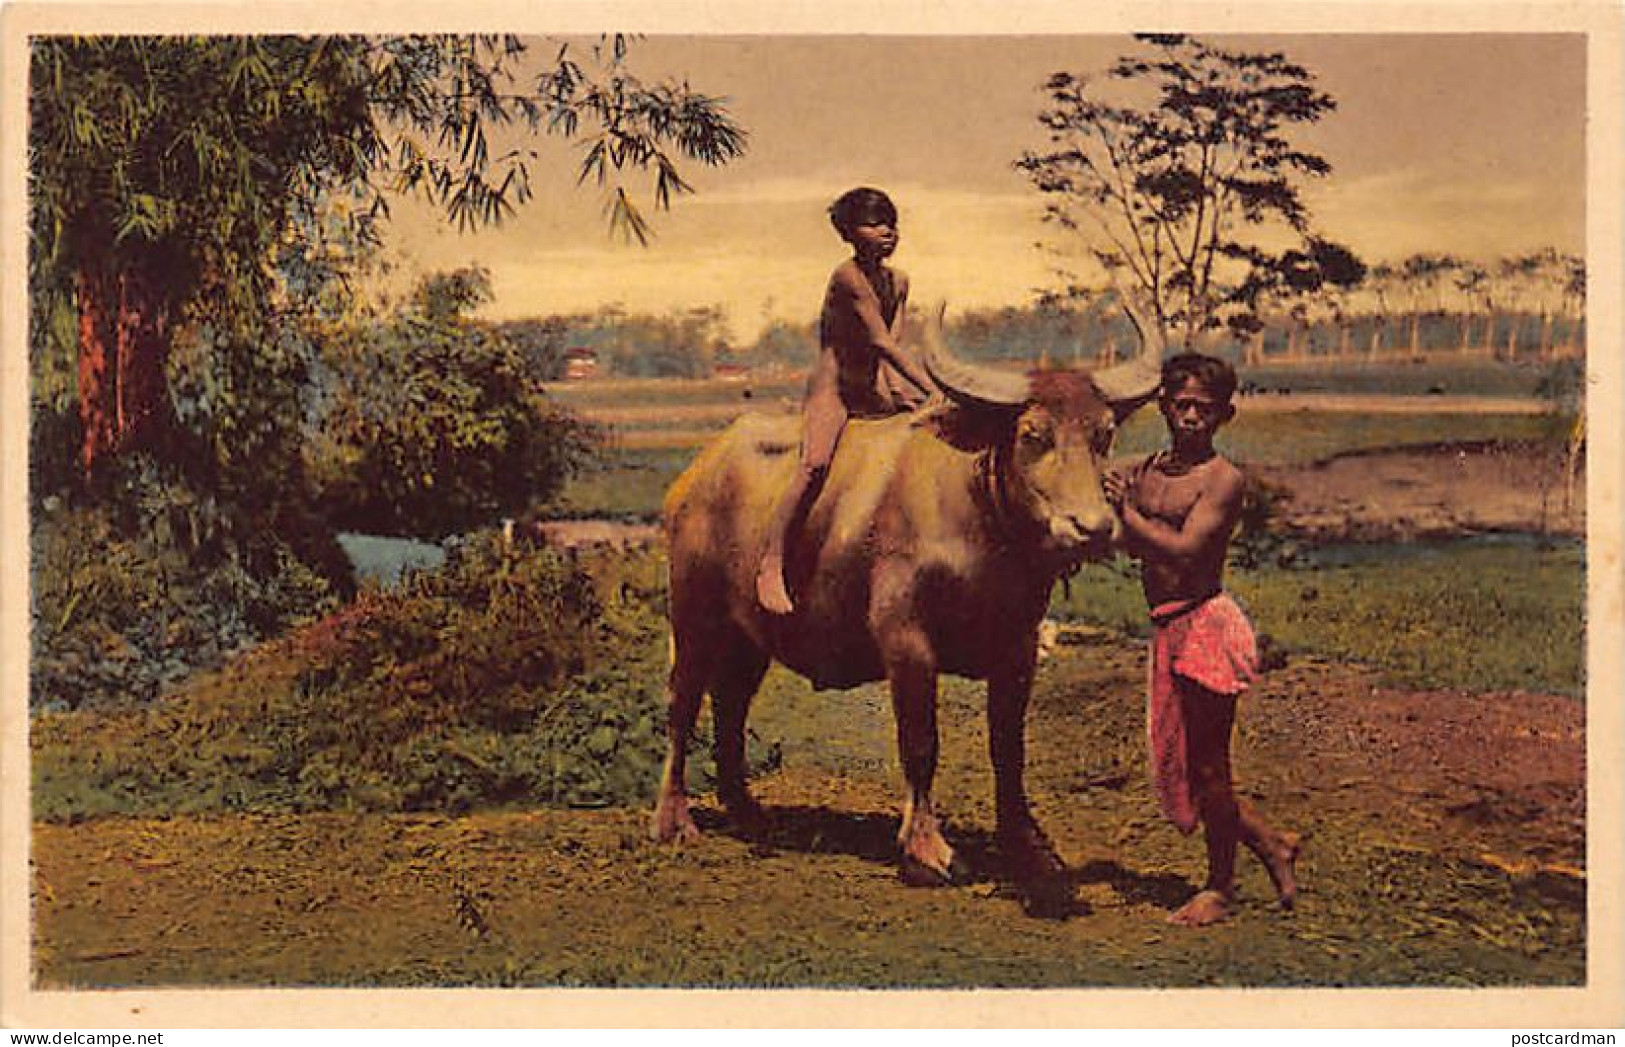 Indonesia - Saïdjah Met Z'n Buffel - Saidjah With His Buffalo - Indonesia